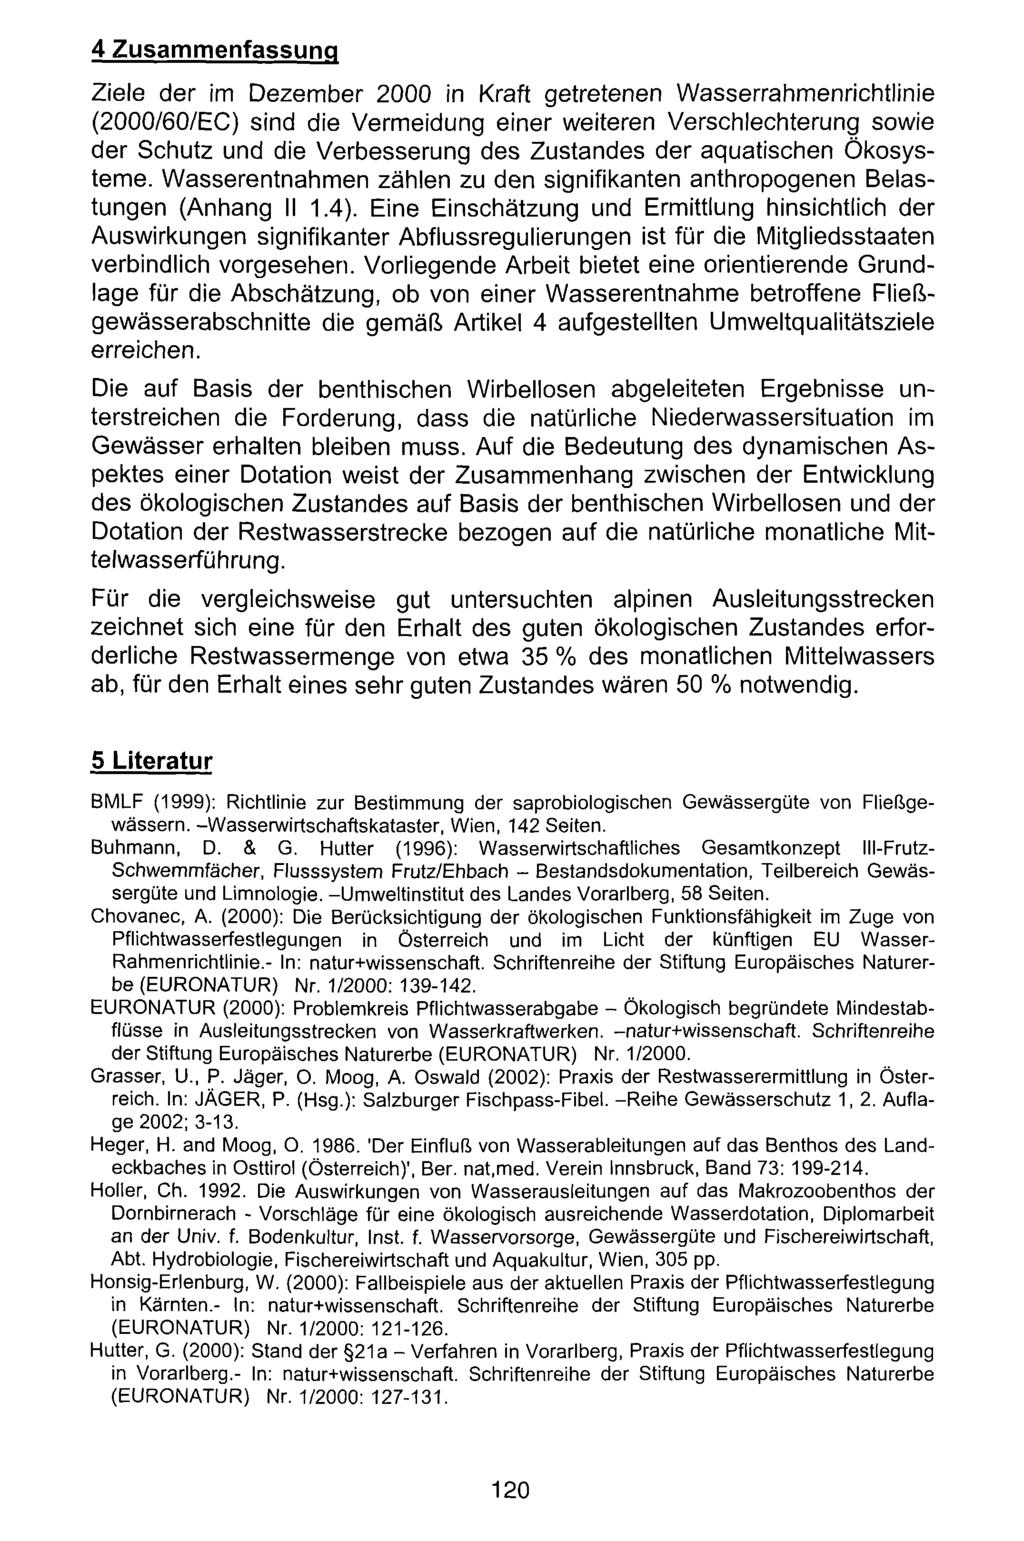 4 Zusammenfassung Amt der Tiroler Landesregierung, Abteilung Umweltschutz; download www.zobodat.